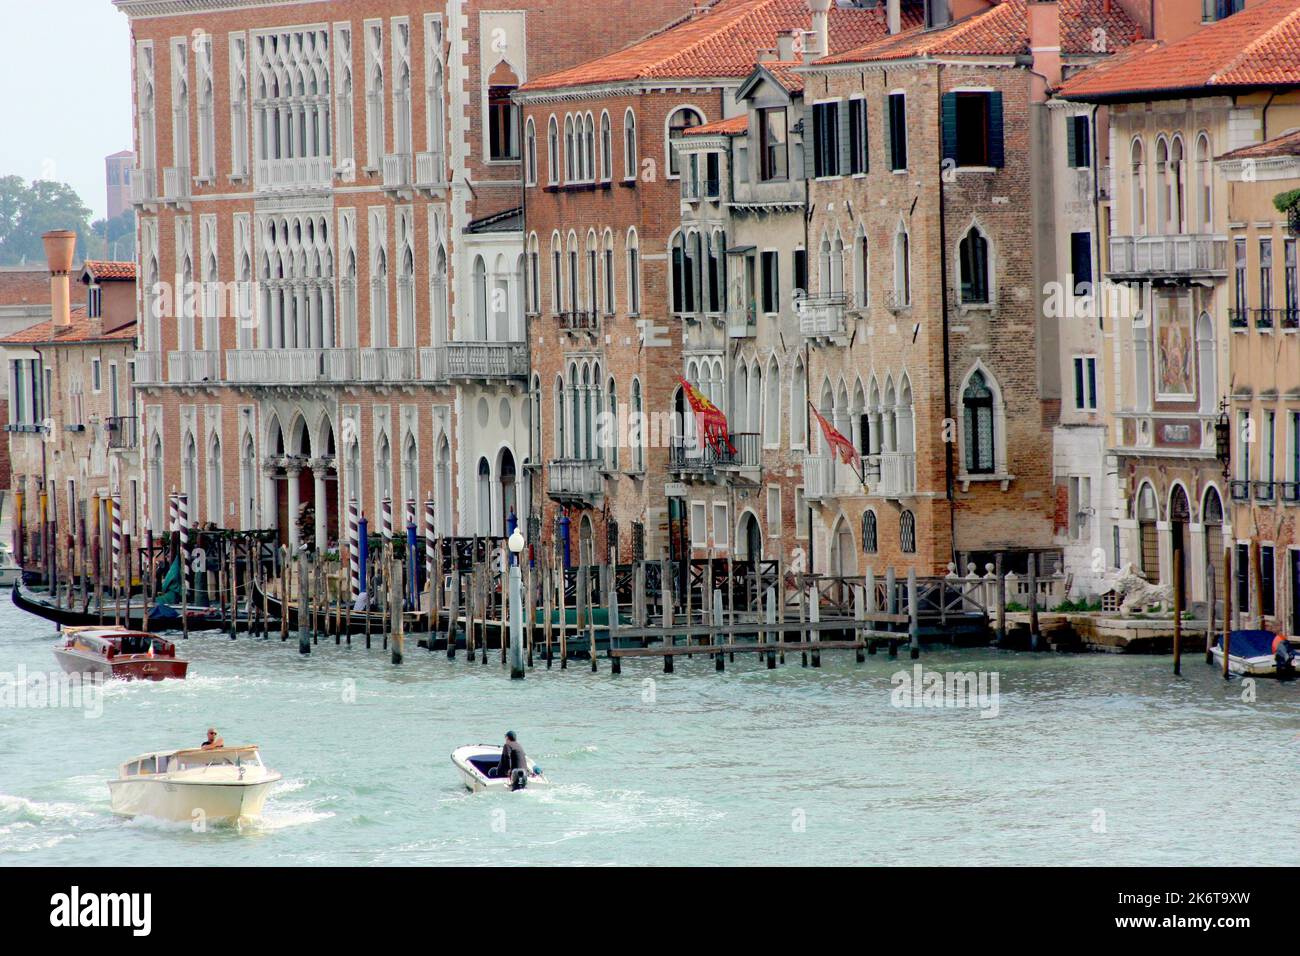 Bateaux-taxis et une gondole sur le Grand Canal à Venise Banque D'Images